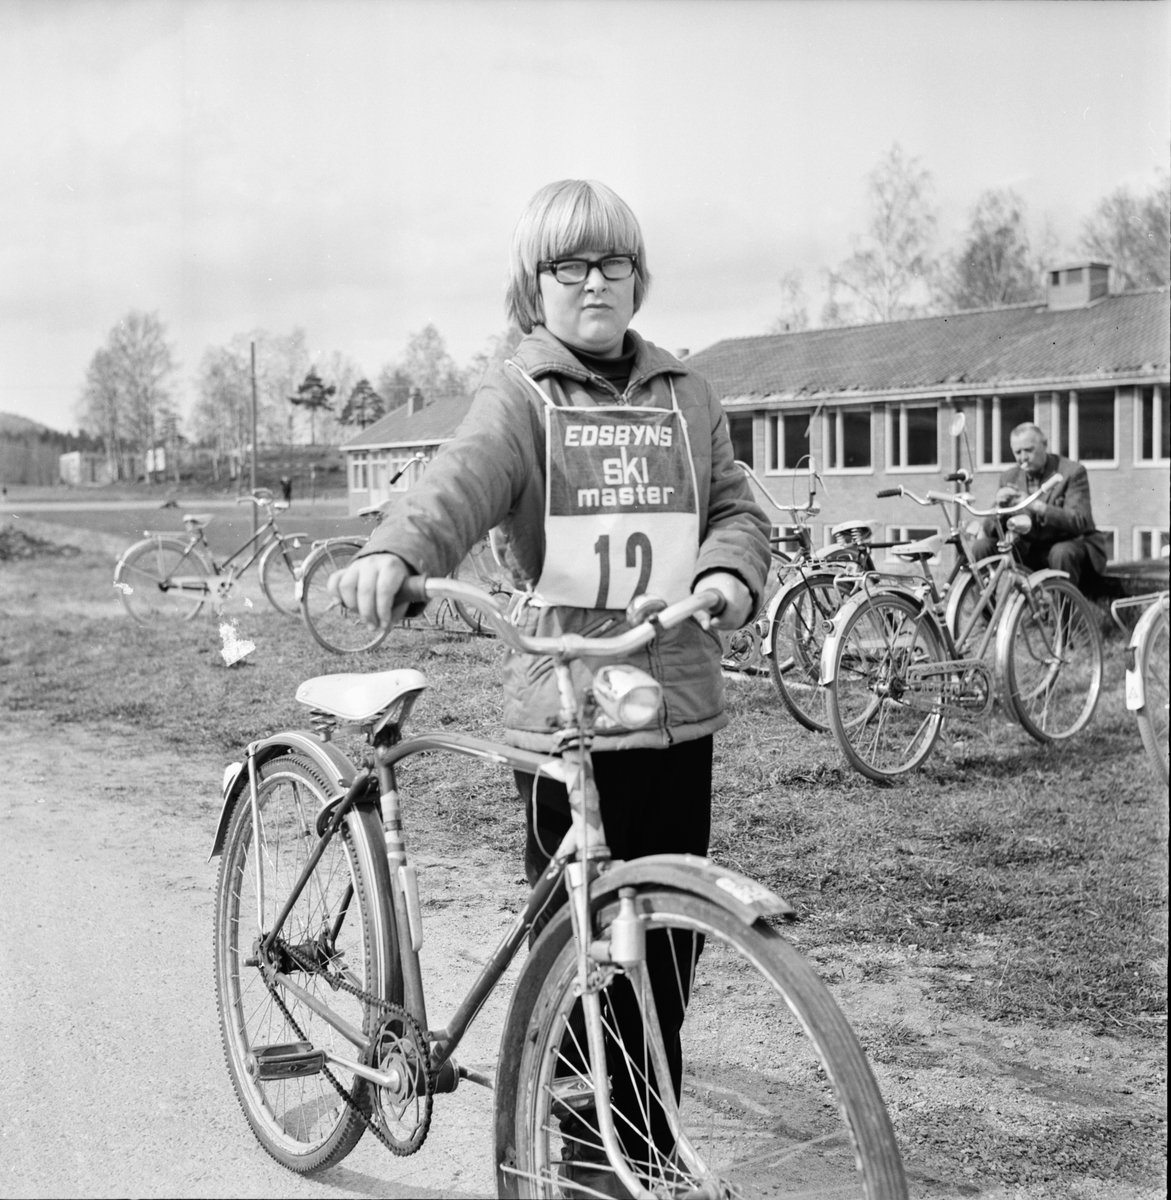 Trafik rikstävling i Bollnäs. 9/5-1967
1. Anders Sundberg Alfta
5. Karin Nilsson Hamre
6. Göran Lindqvist Häggesta